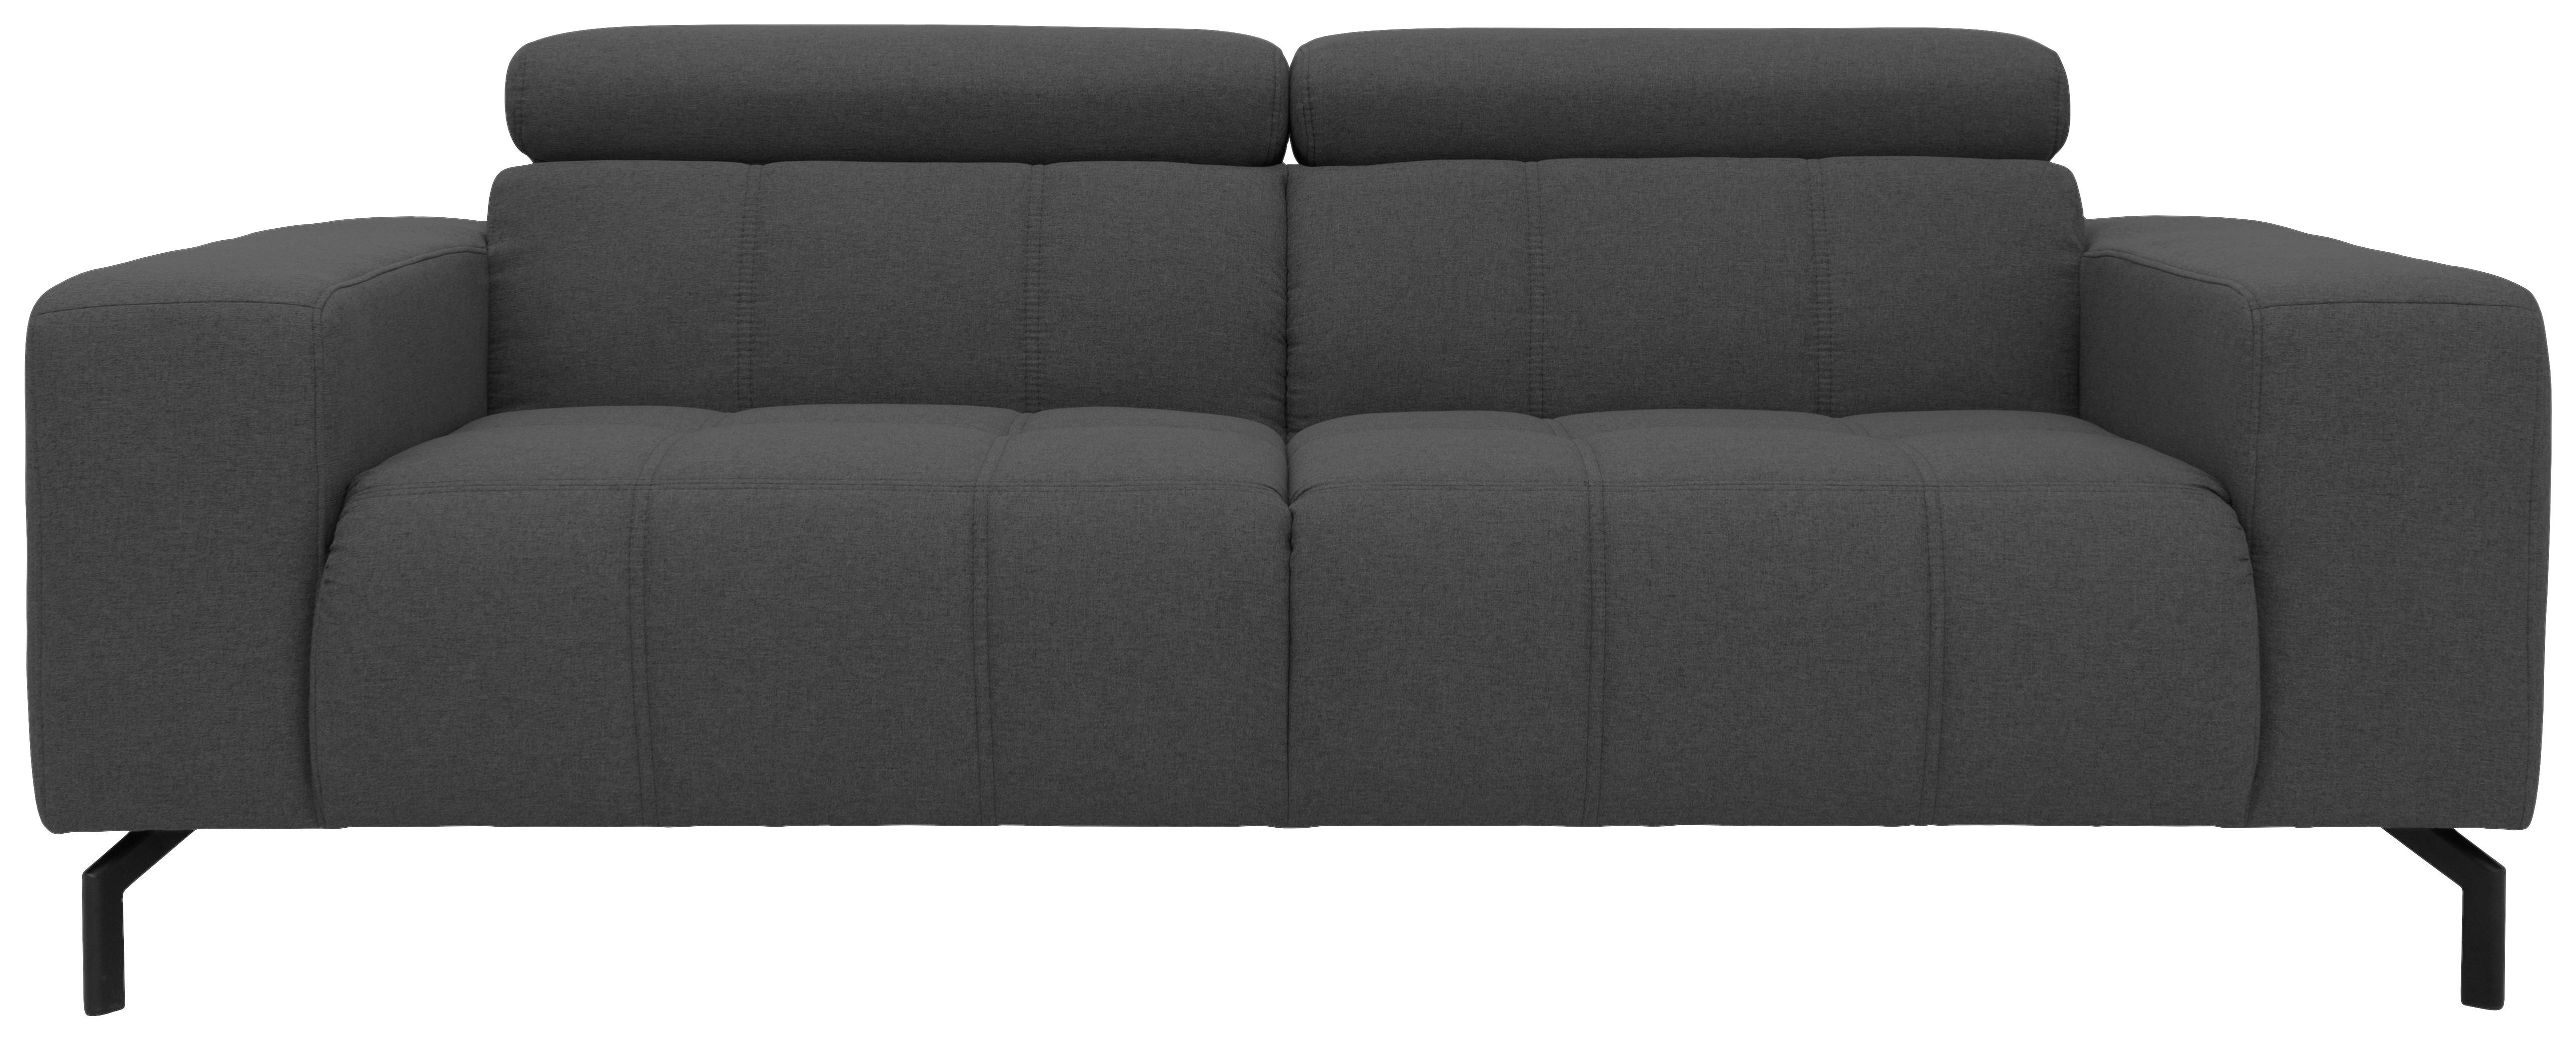 2-Sitzer-Sofa Cunelli Grau Webstoff - Schwarz/Grau, Design, Textil (208/79/104cm)